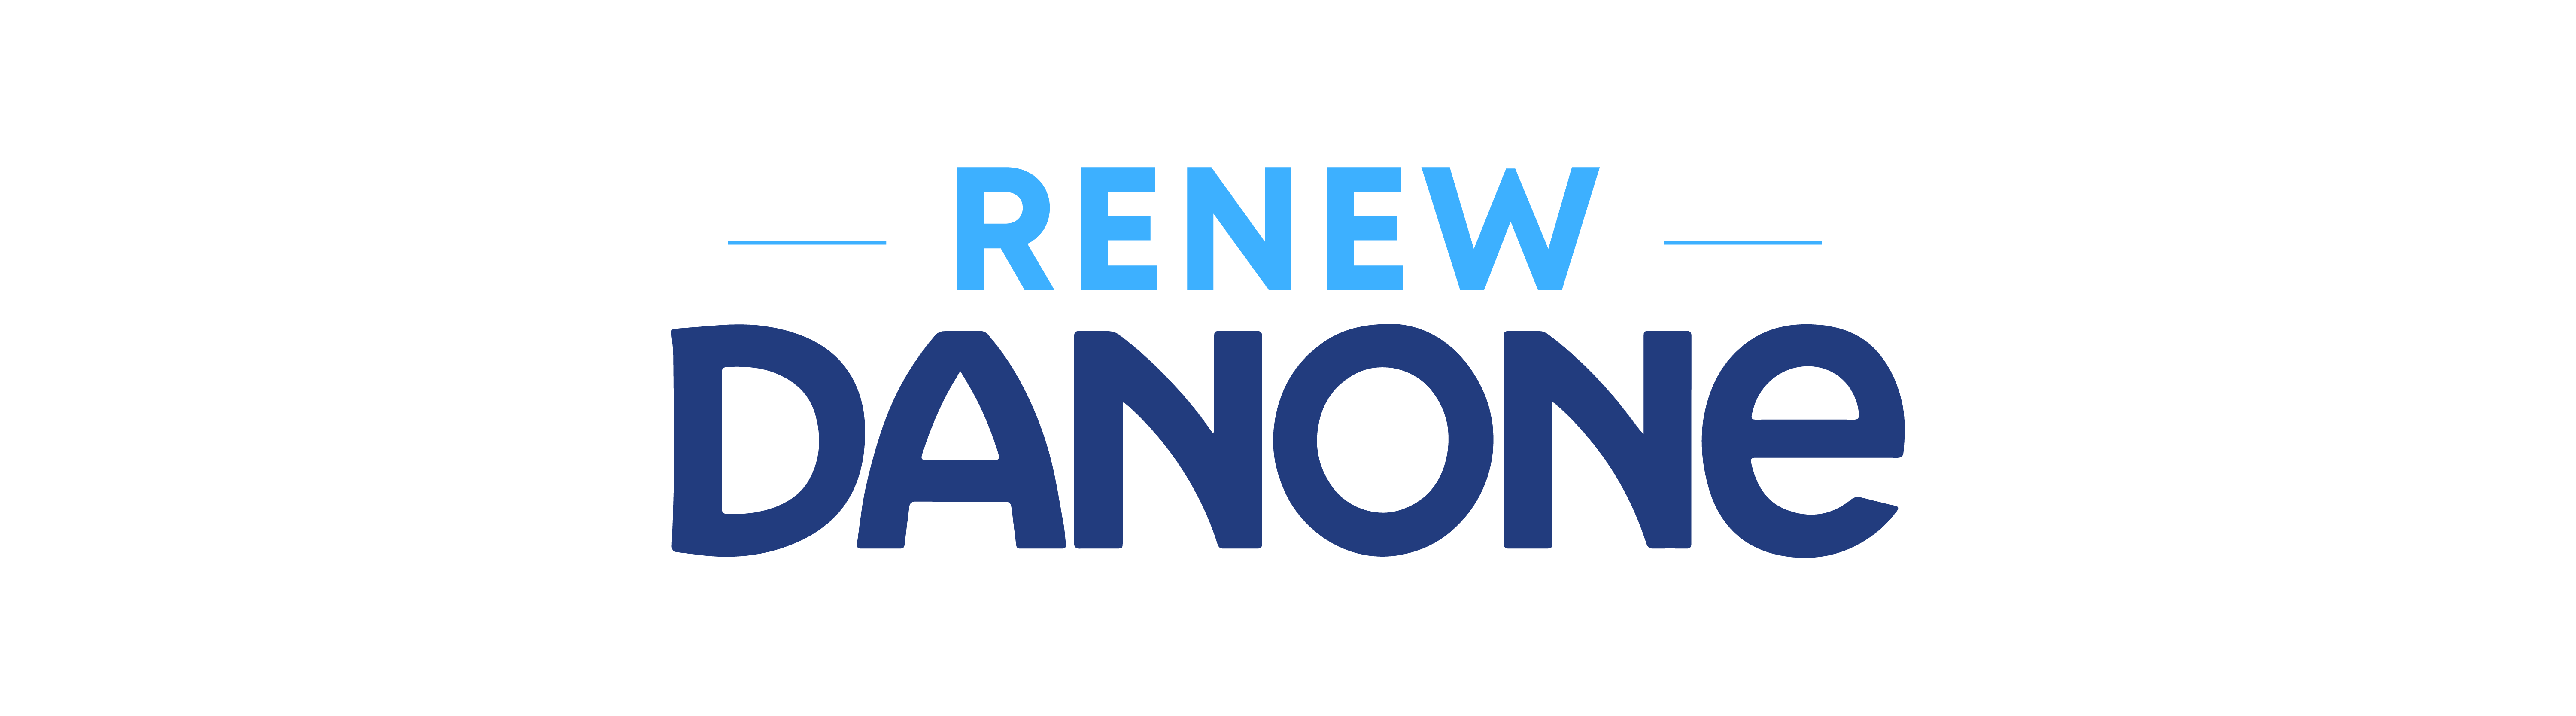 renew danone logo